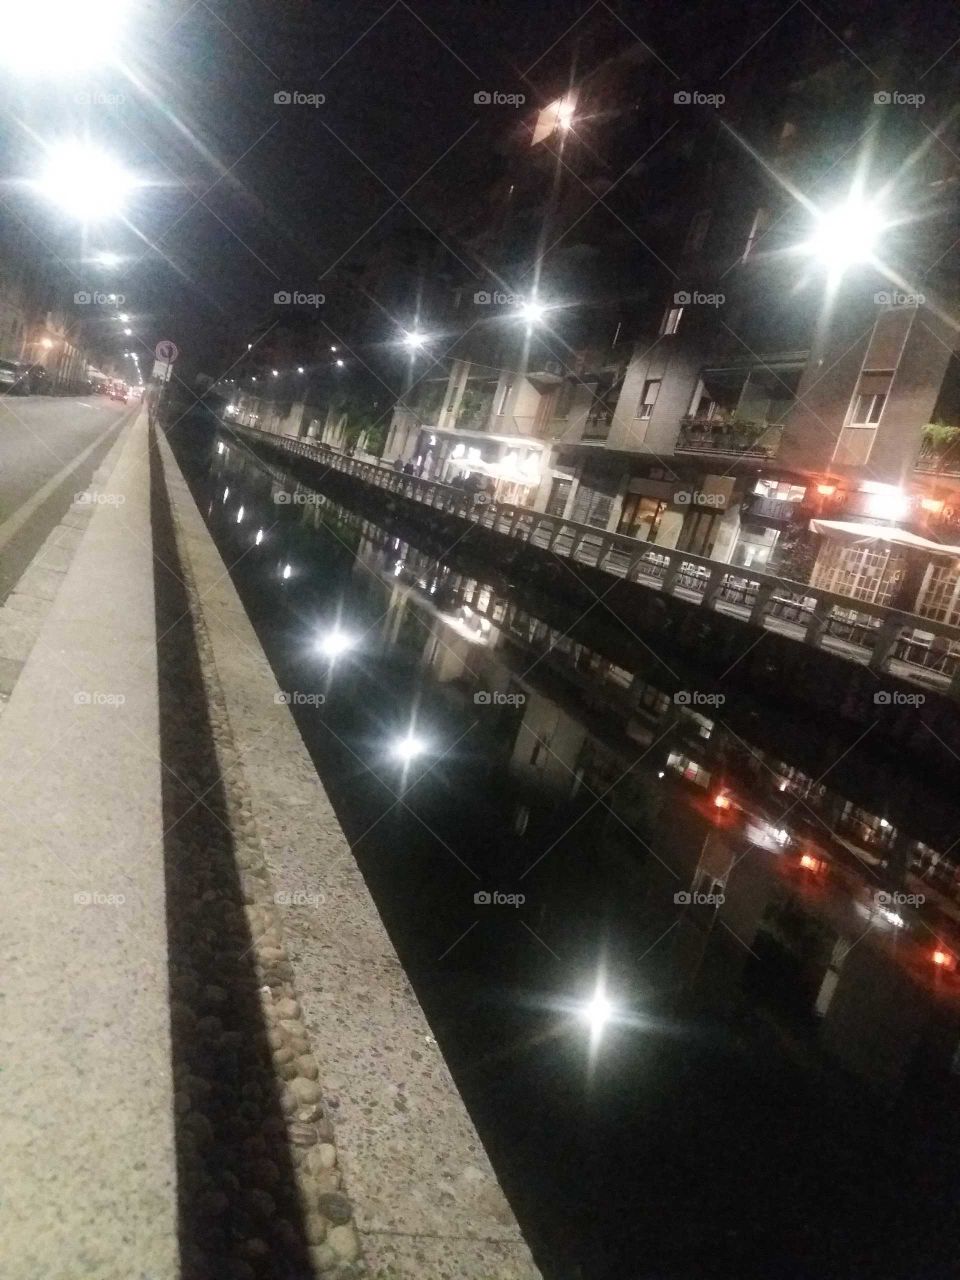 Milan canal